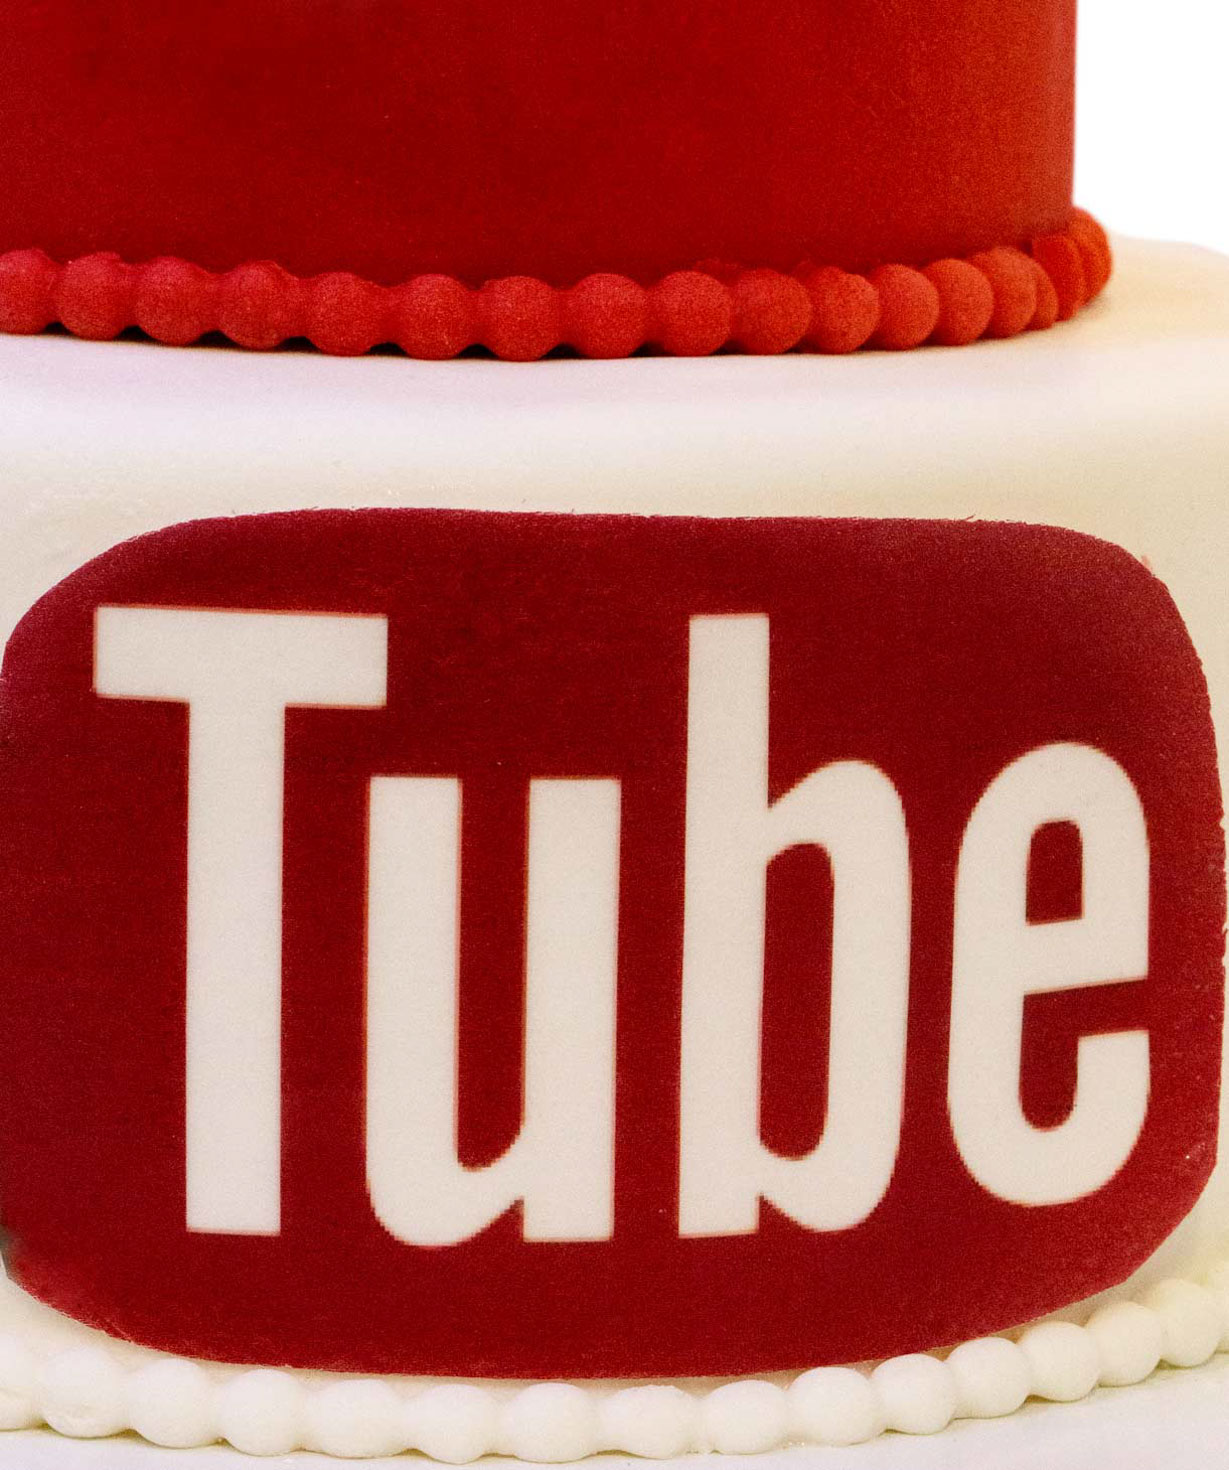 Cake `Youtube`